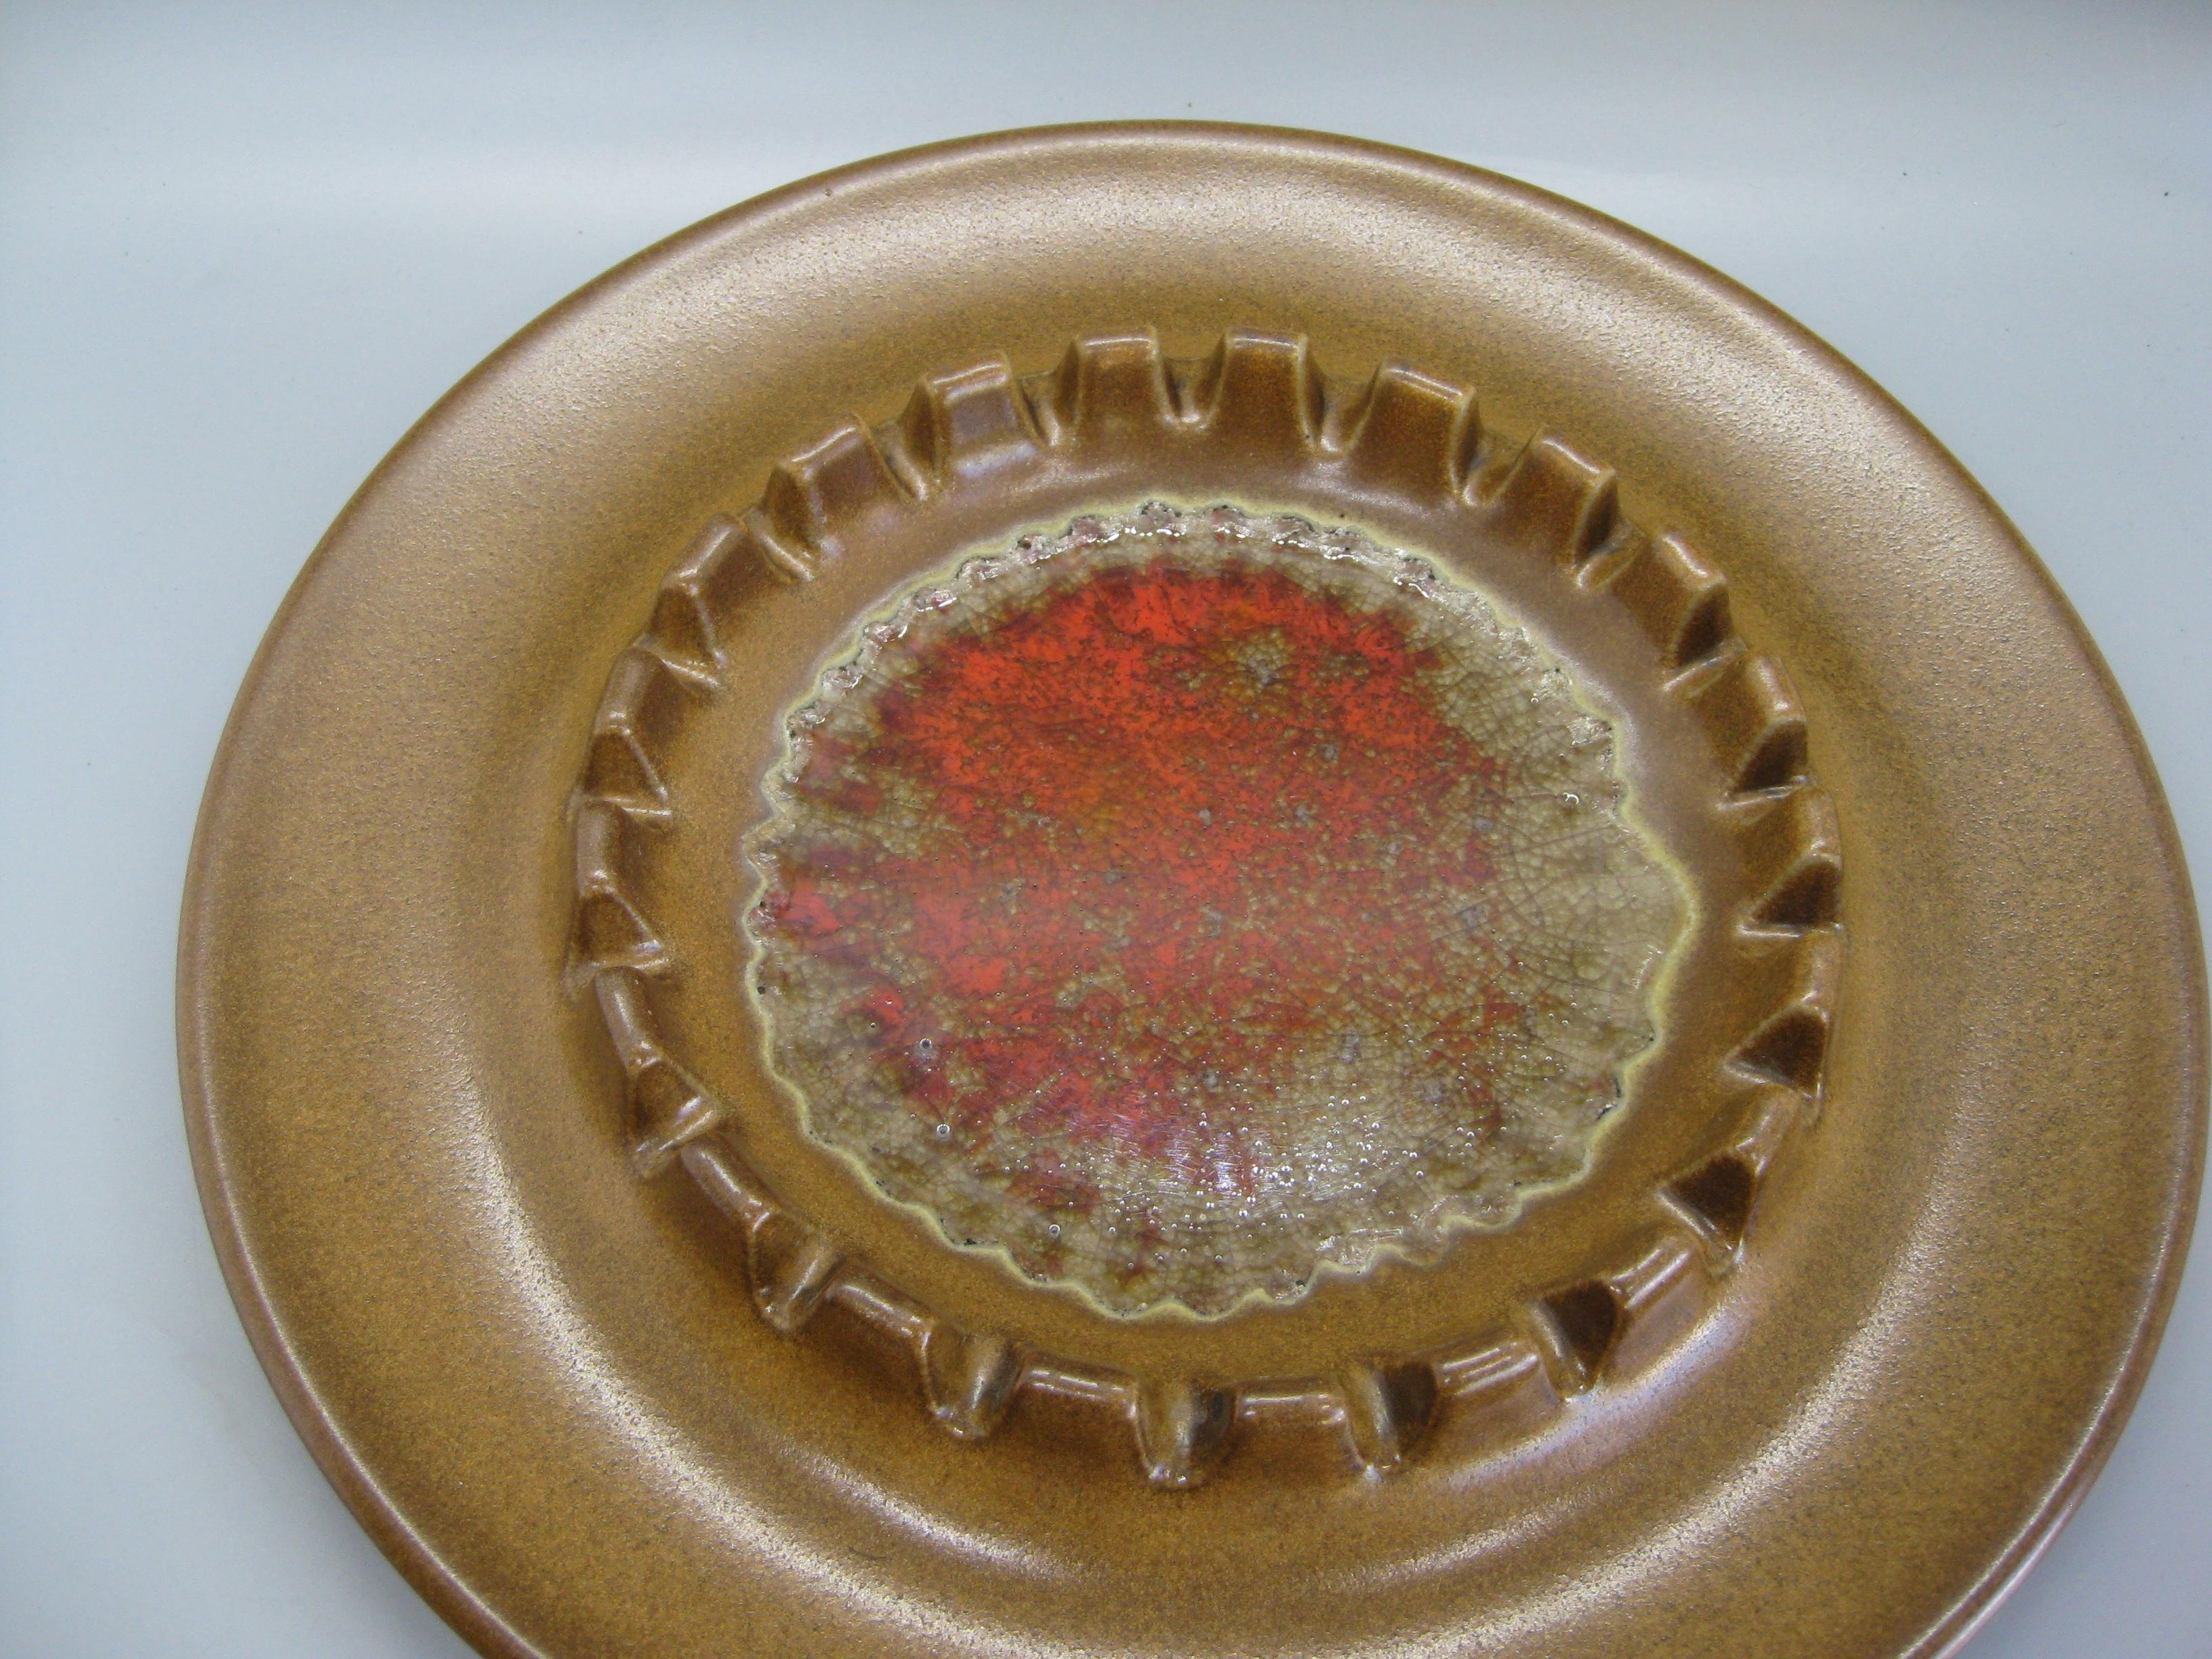 Superbe cendrier en poterie d'atelier californien par Robert Maxwell, vers 1965. Le centre du cendrier est en verre craquelé rouge. Signé en bas par l'artiste. Une conception et une forme très uniques. En excellent état, sans éclats, sans fissures